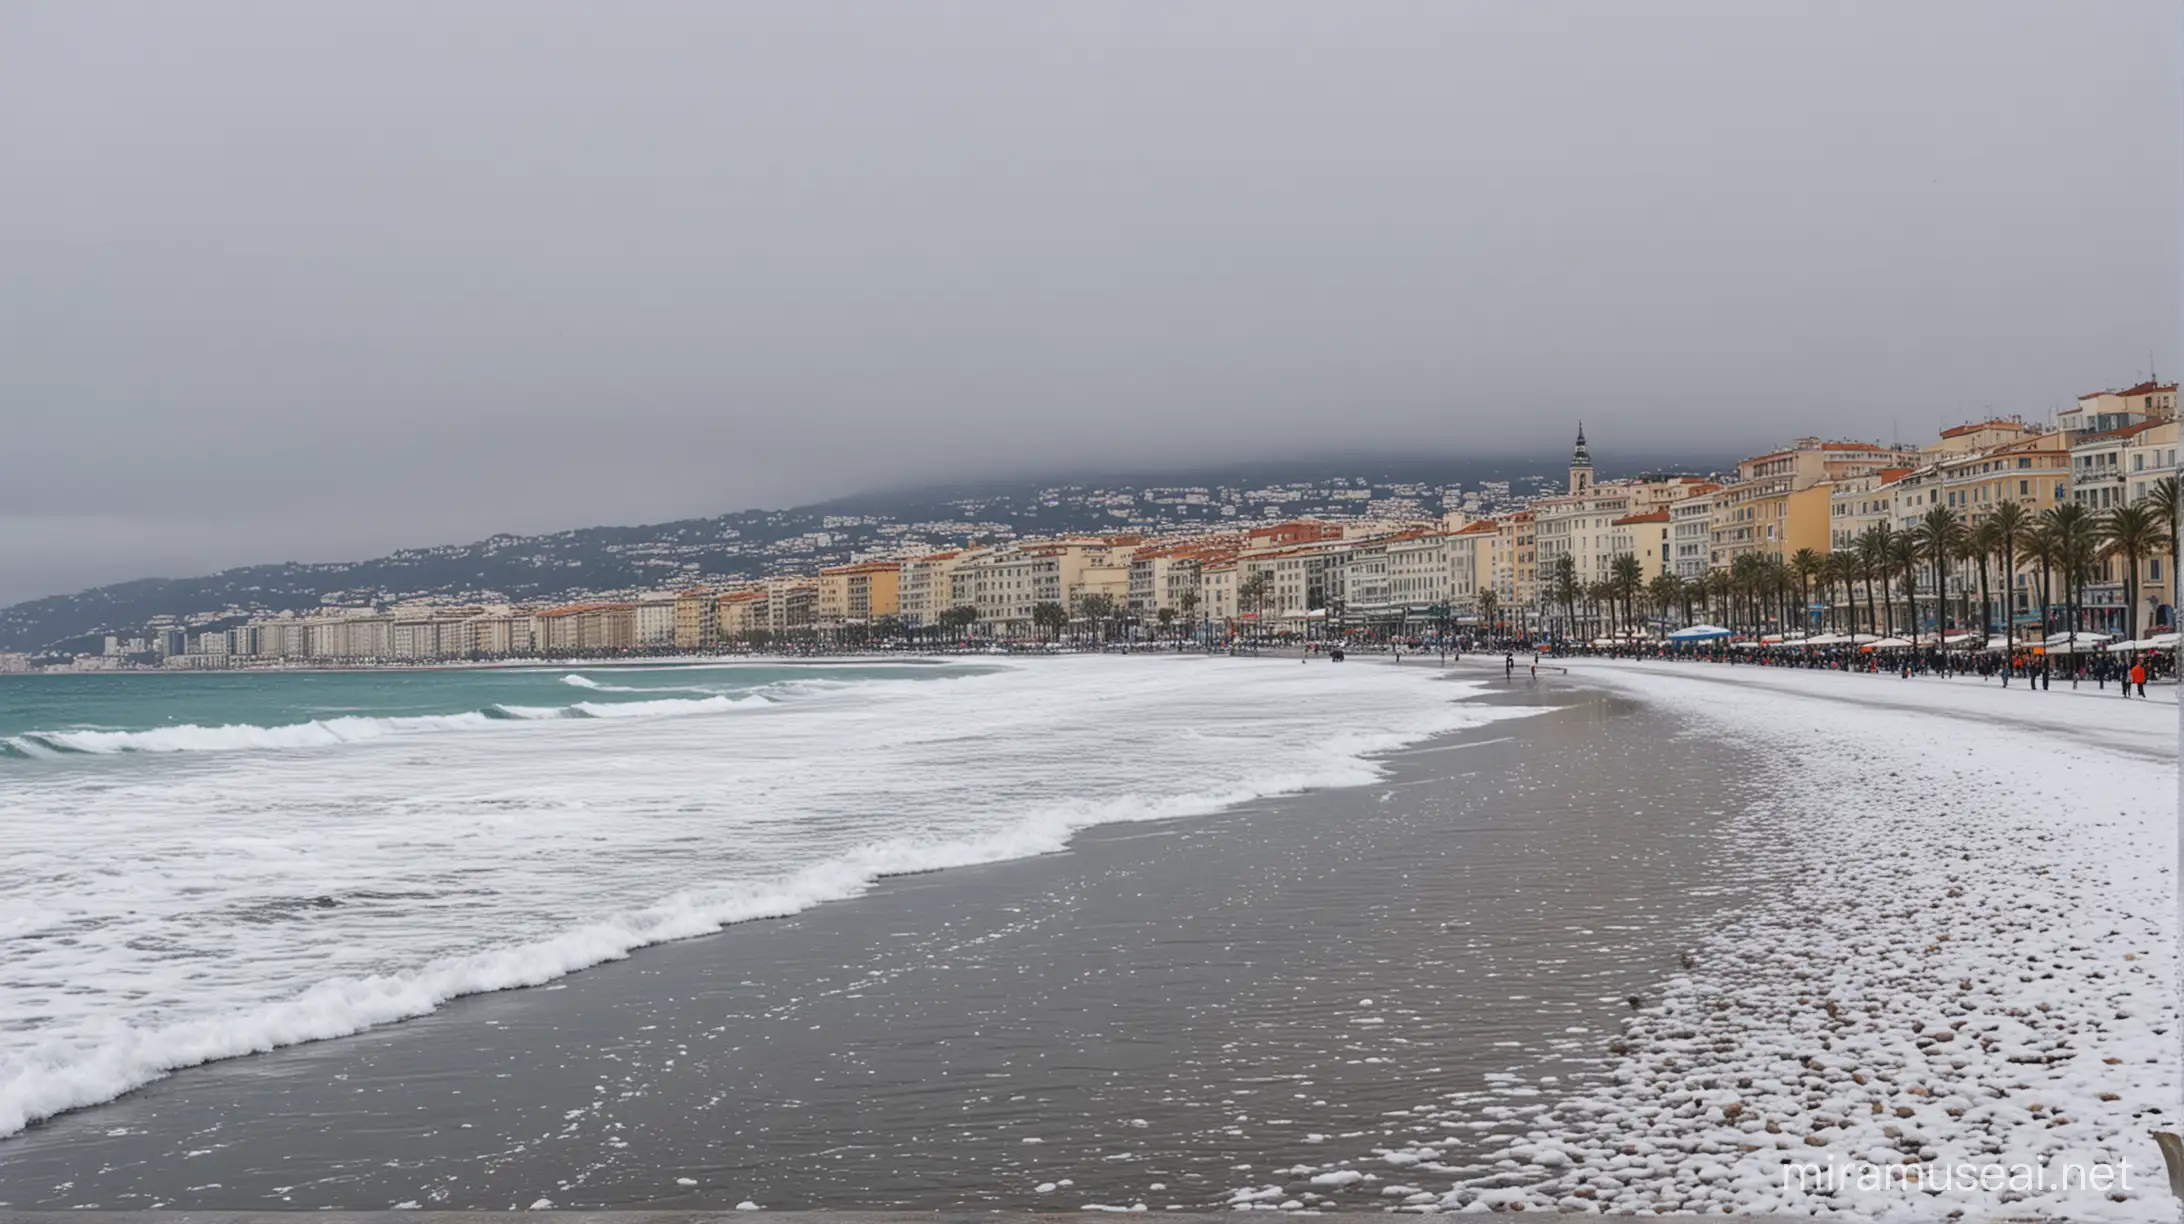 Snowy Seaside Scene in Nice France Tranquil Coastal Winter Landscape